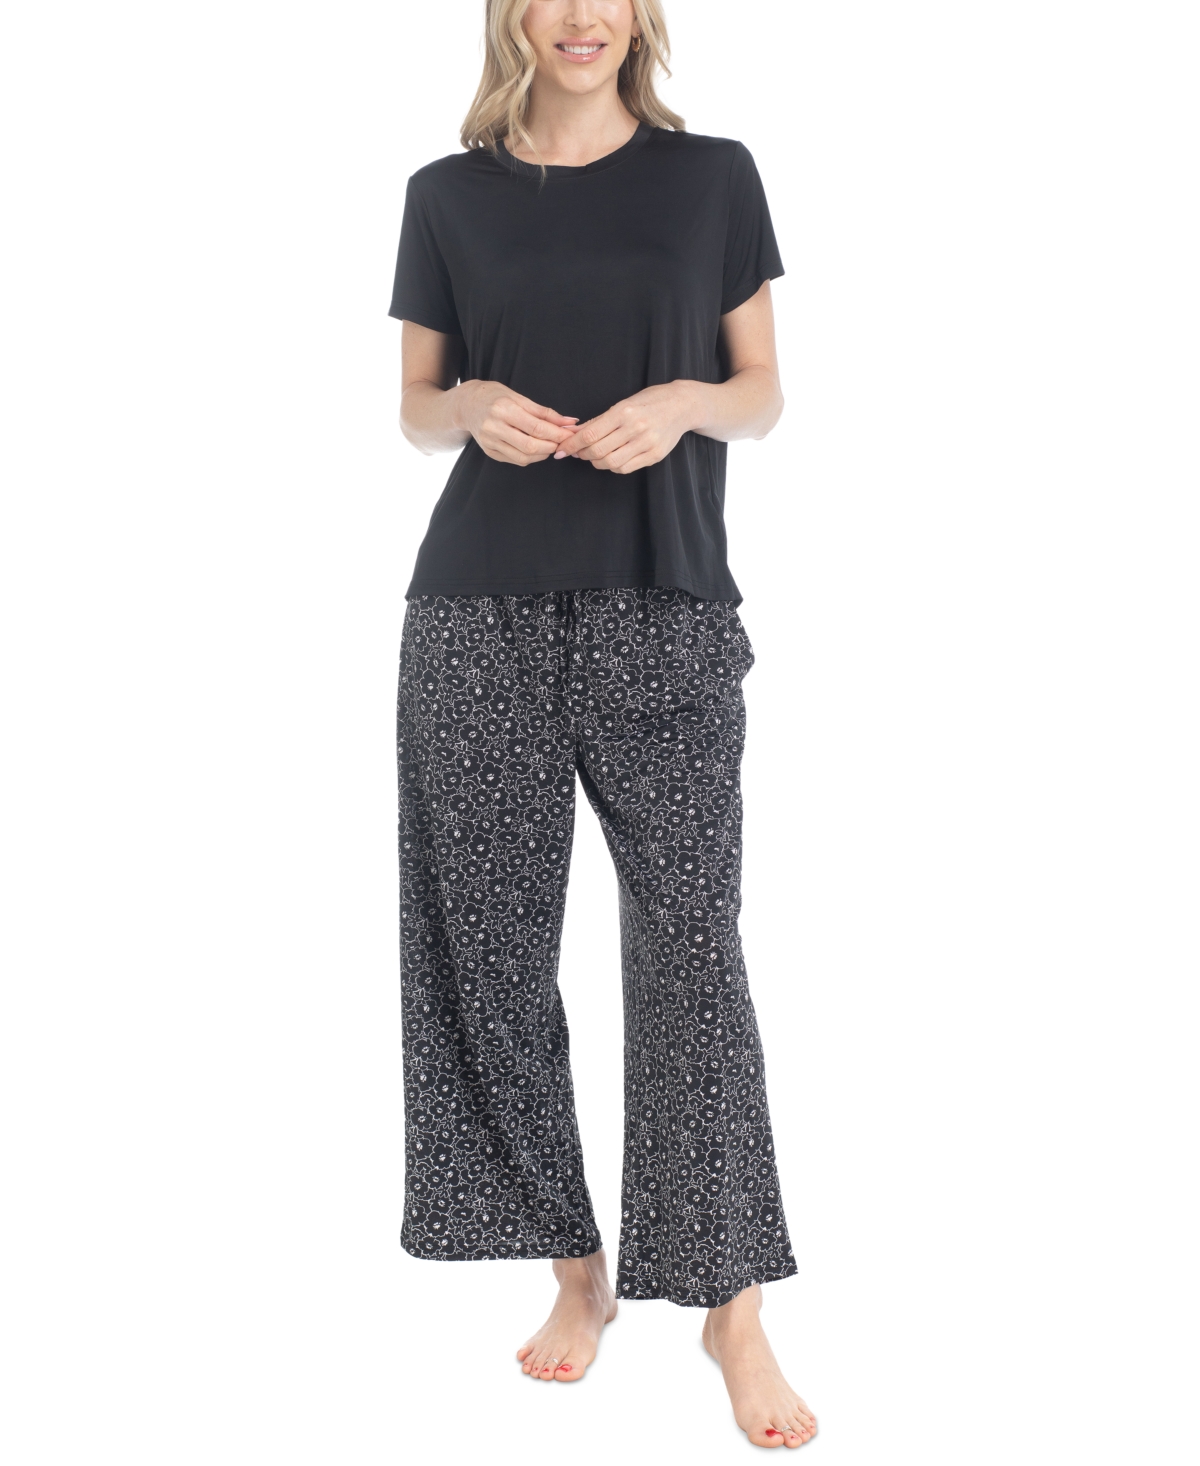 Muk Luks Women's 2-pc. Short-sleeve Pajamas Set In Black Floral